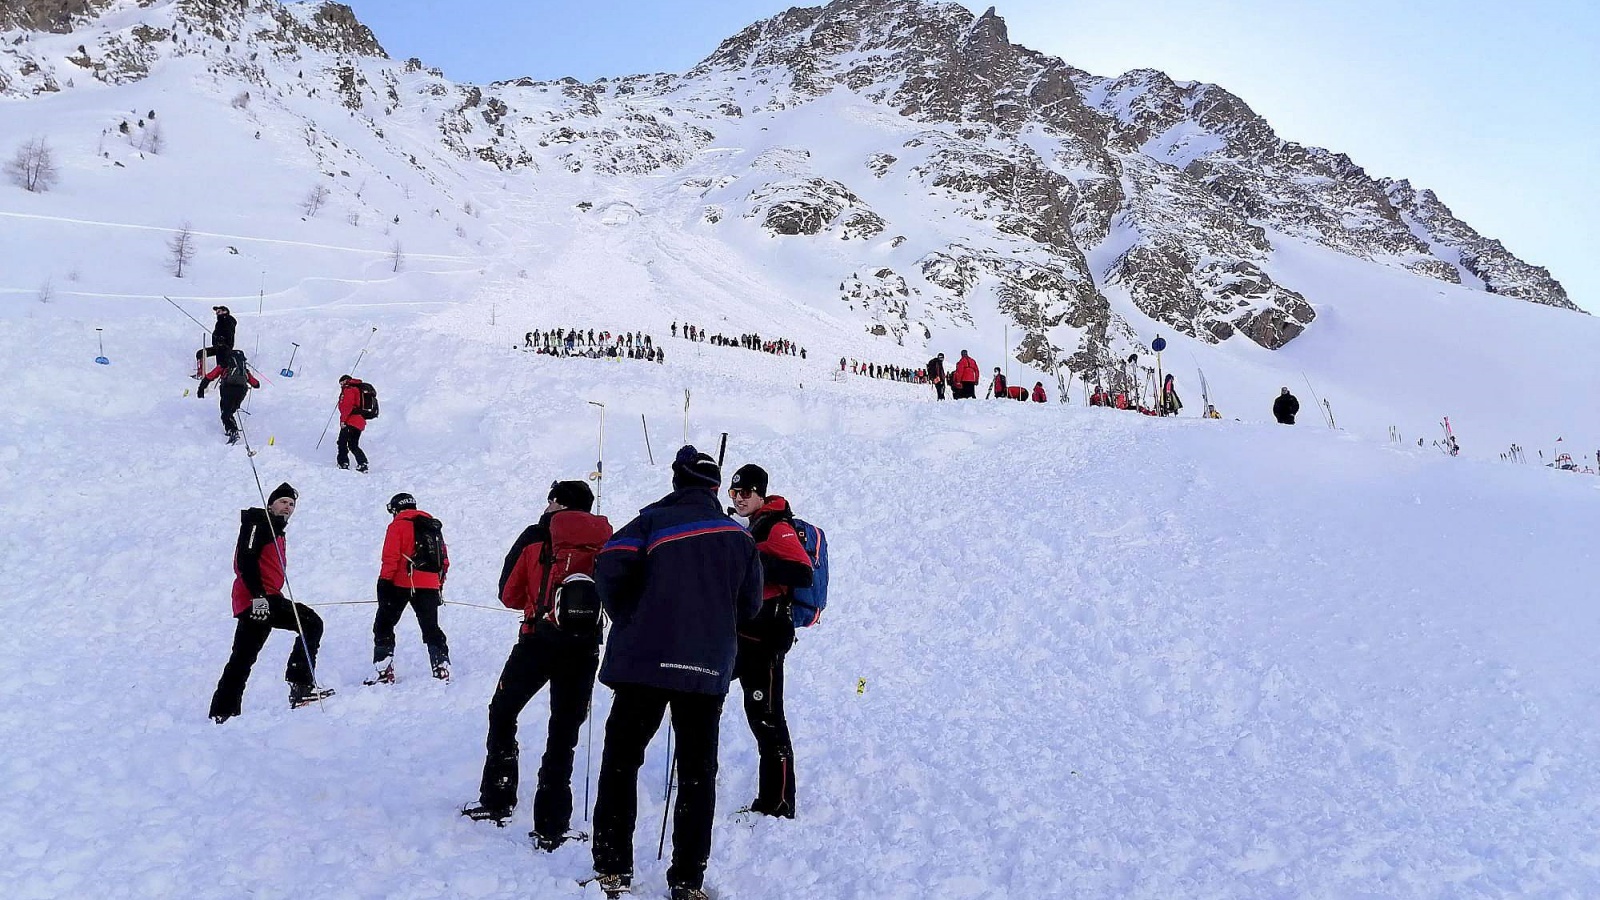 رجال الإنقاذ يقفون عند نهر ريتنباخ الجليدي بالقرب من سويلدن بالنمسا في فبراير 2022 بعد انهيار جليدي. خلفت سلسلة من الانهيارات الثلجية في النمسا ثلاثة قتلى